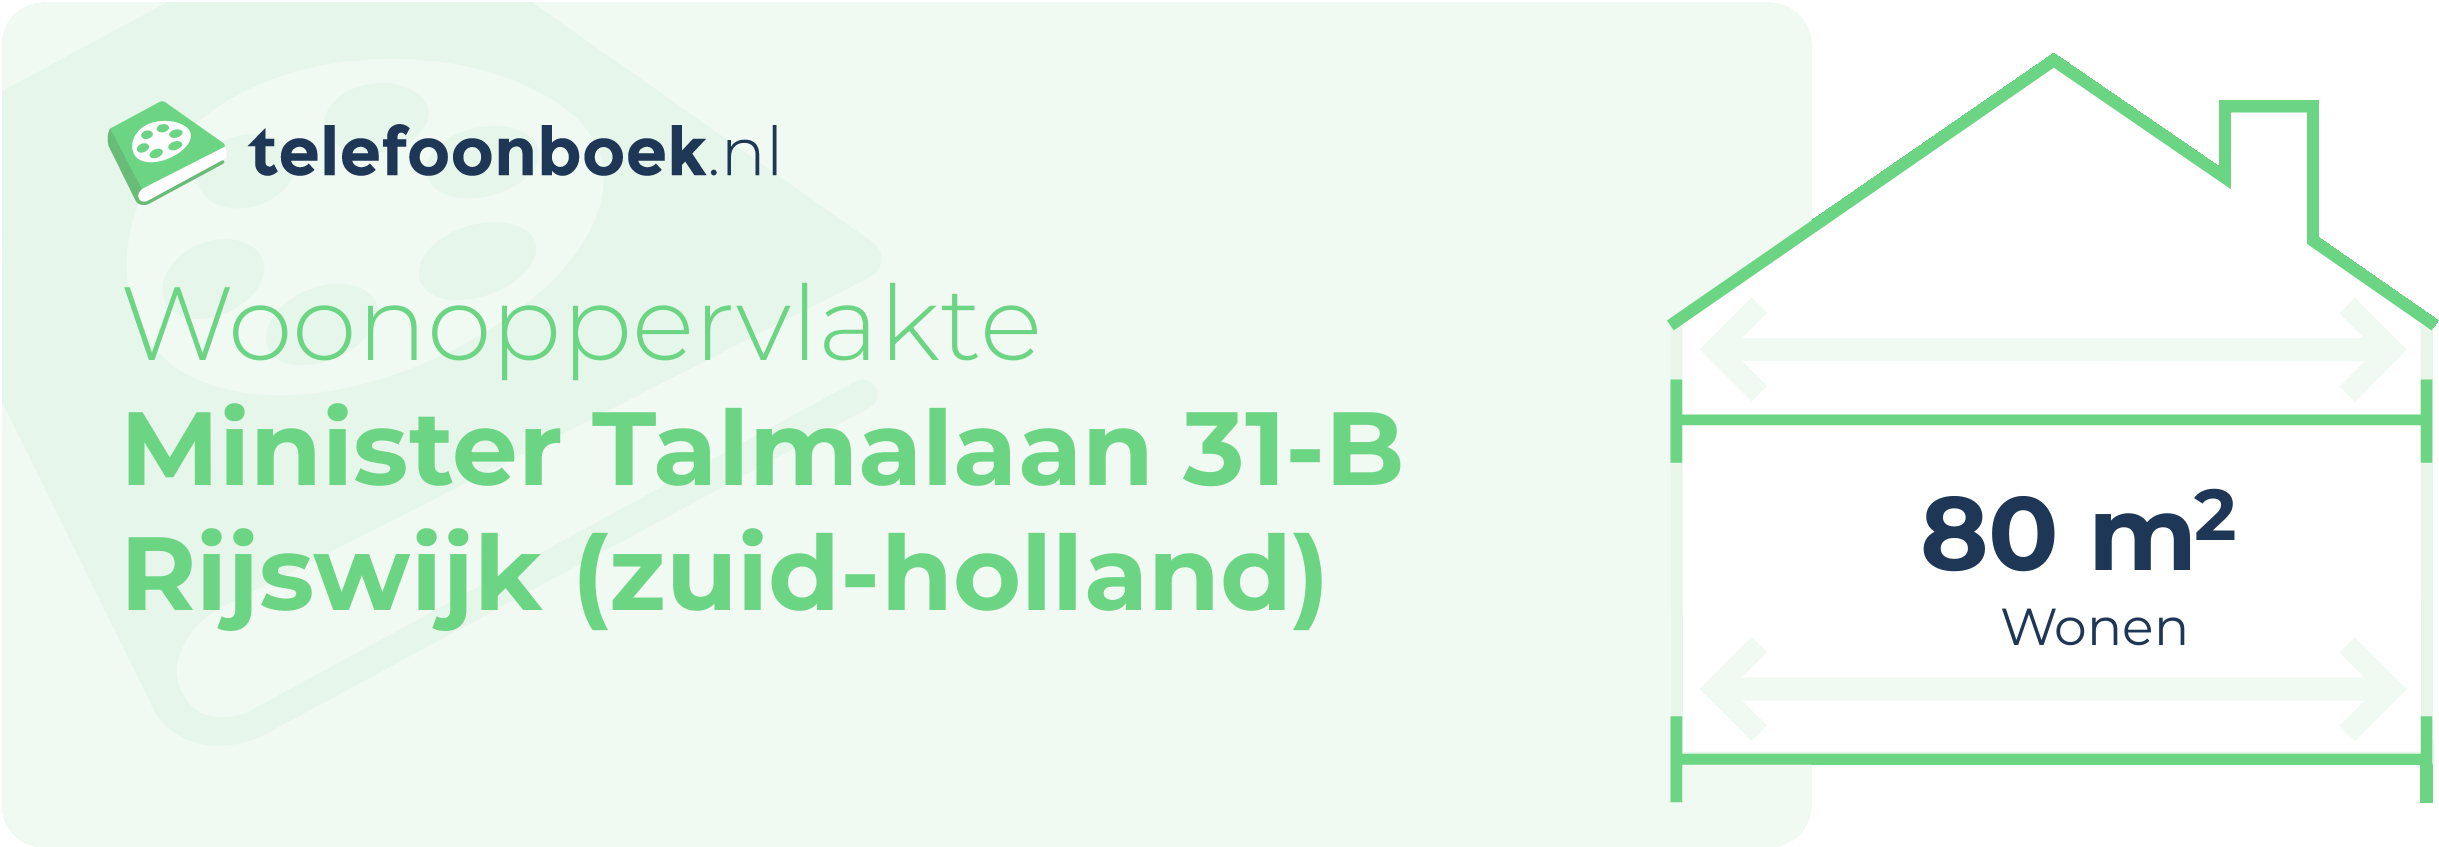 Woonoppervlakte Minister Talmalaan 31-B Rijswijk (Zuid-Holland)